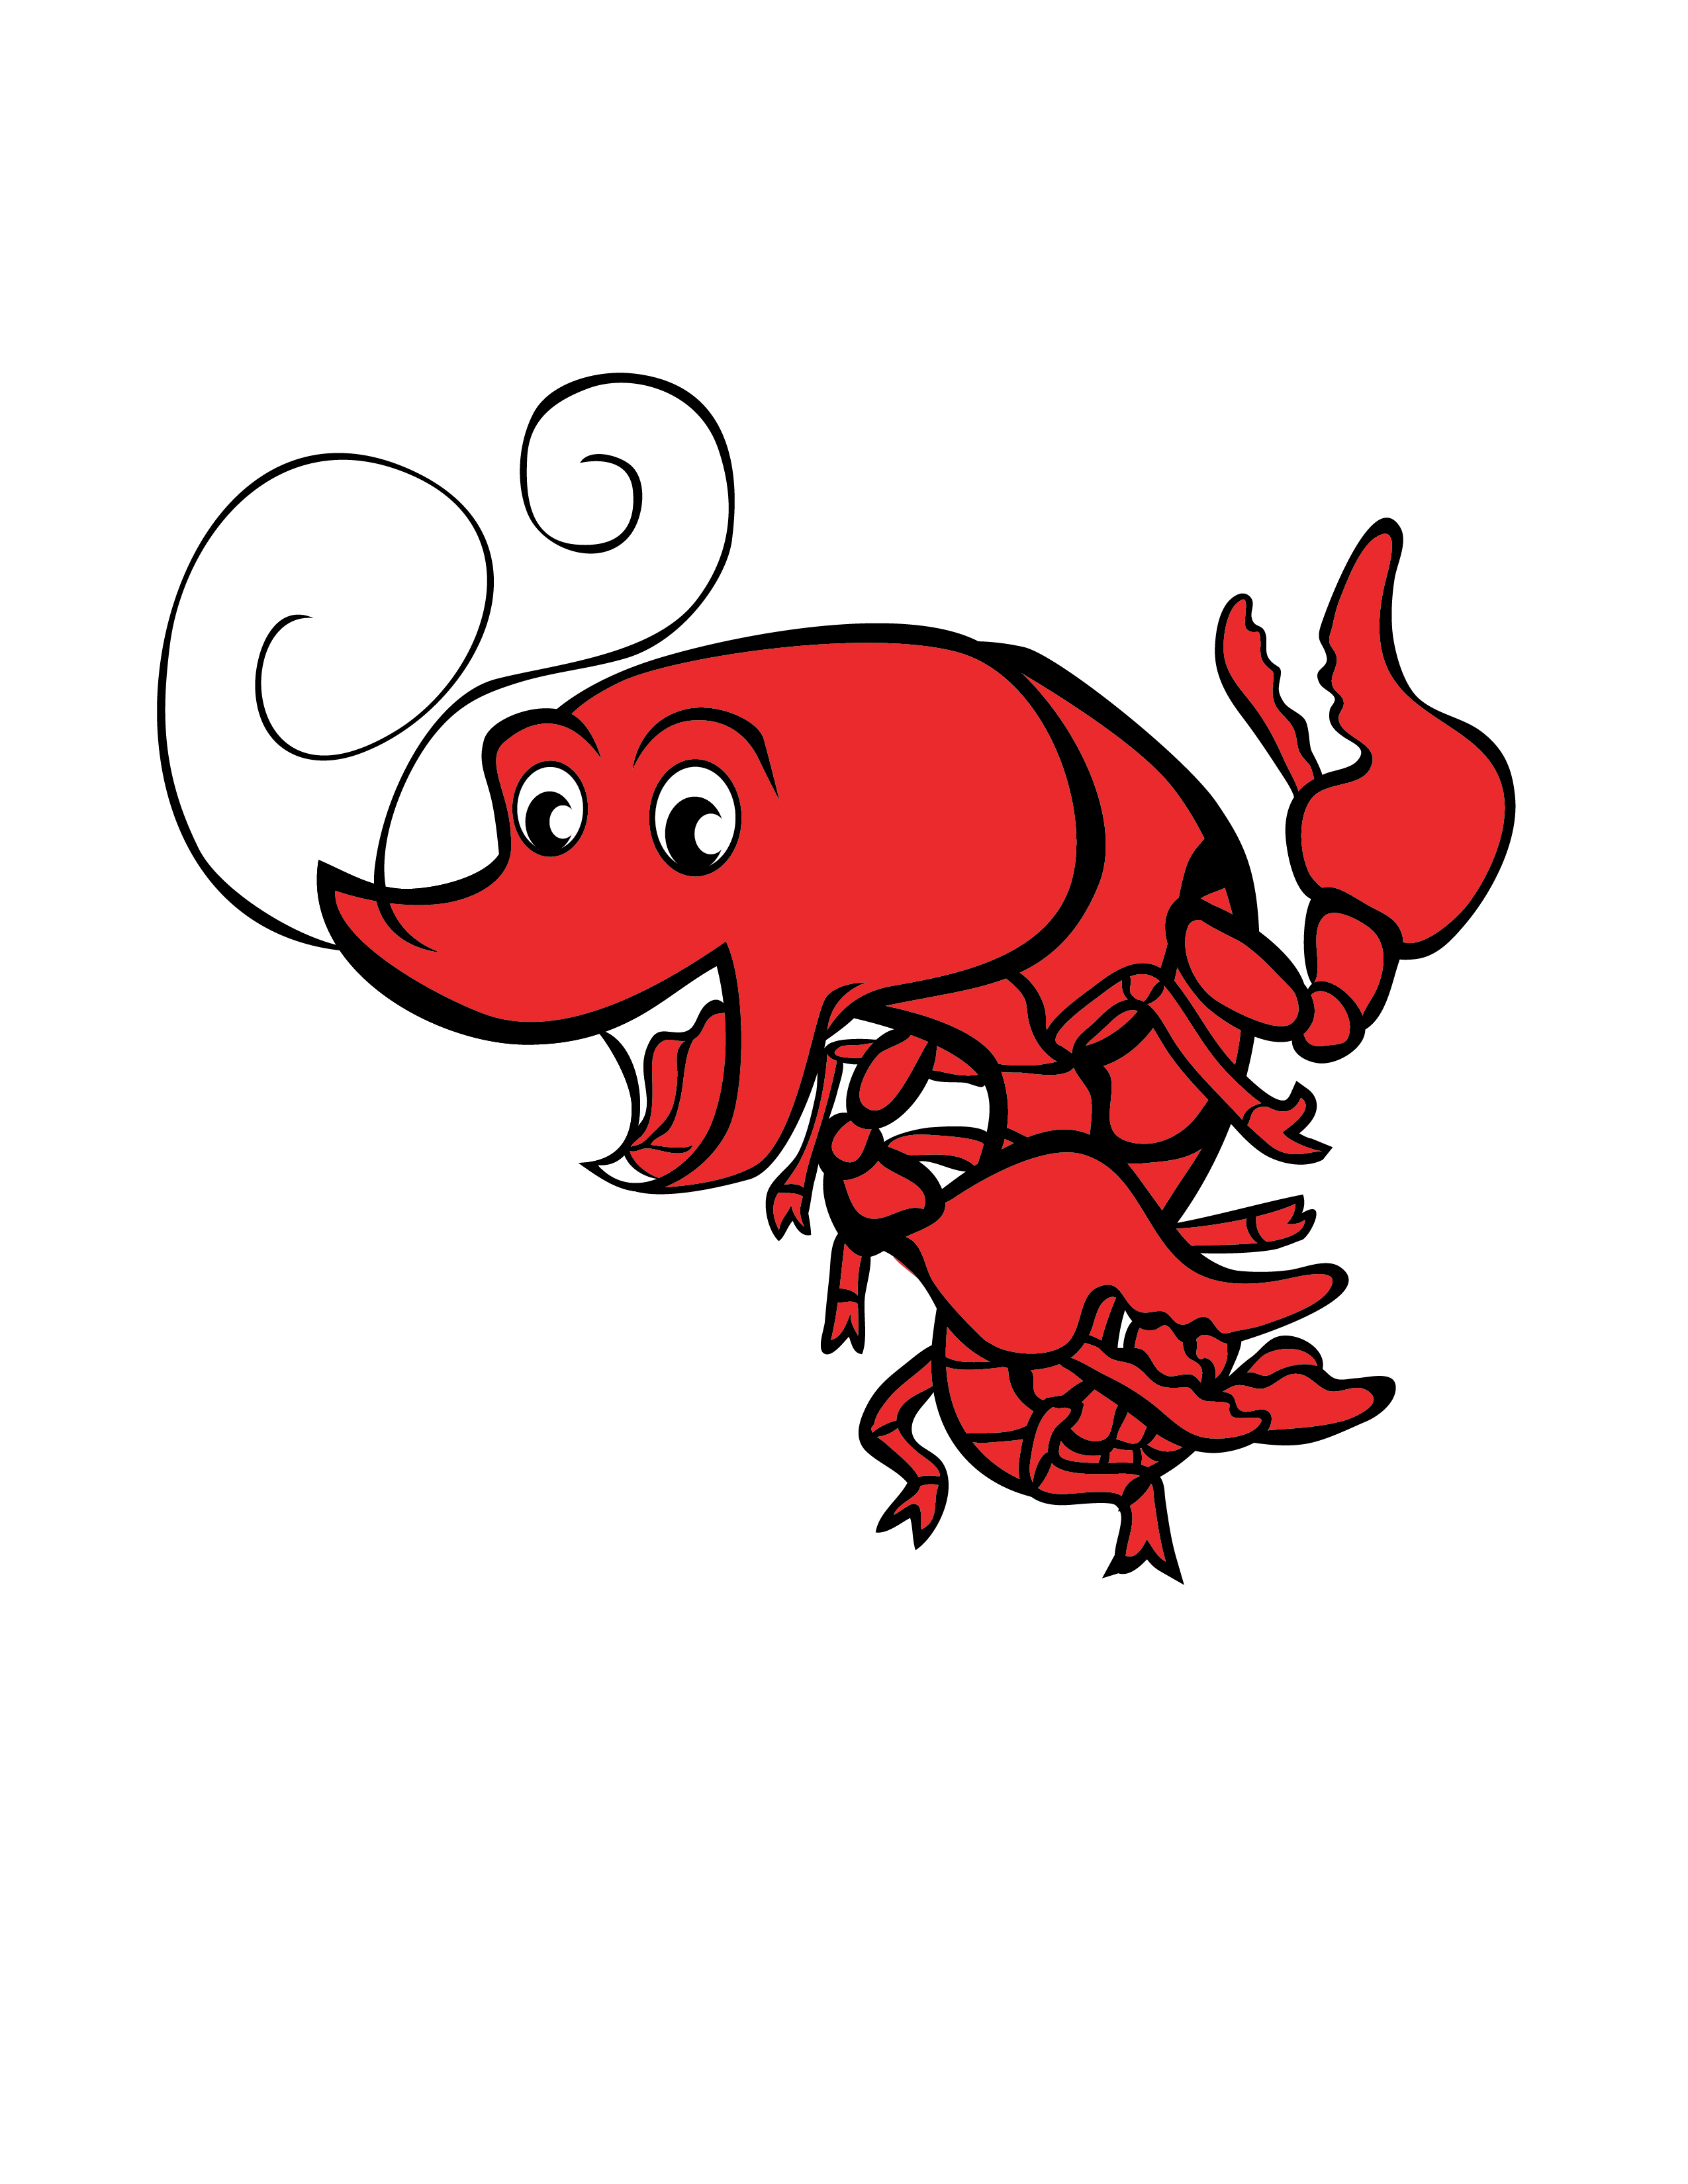 Crawfish clipart red crawfish, Crawfish red crawfish ...